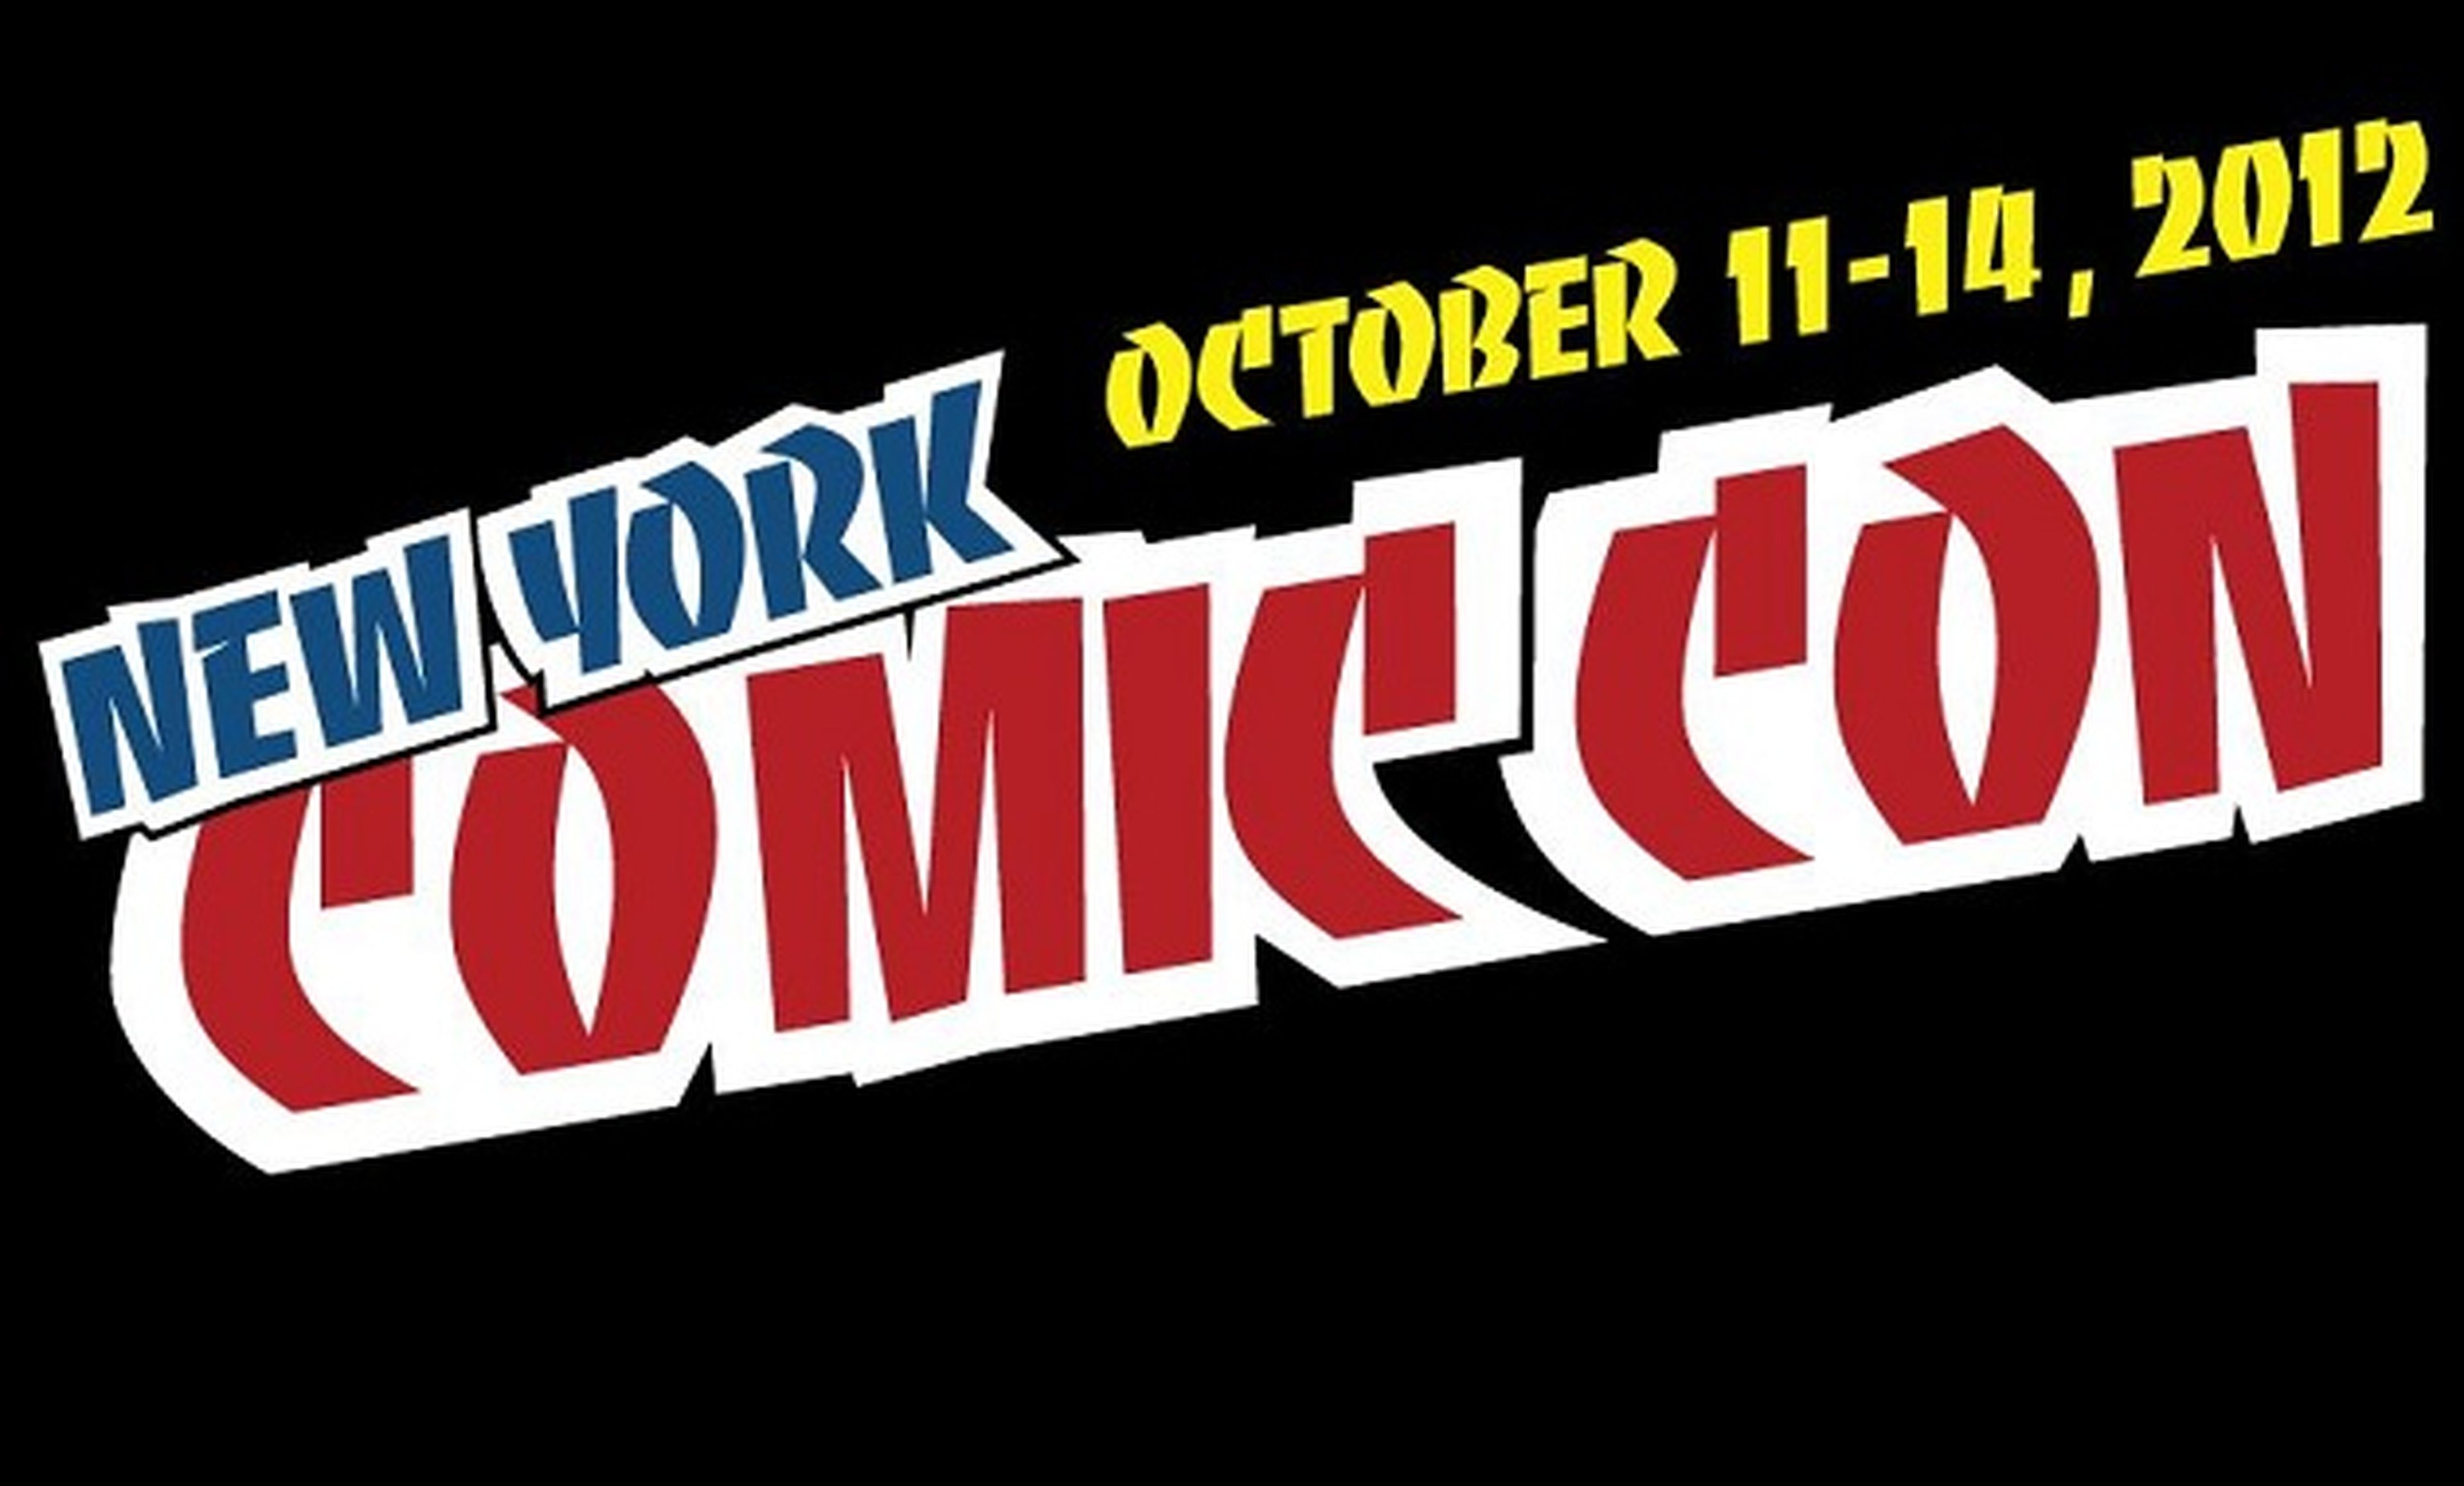 ¡New York Comic Con ya está aquí!